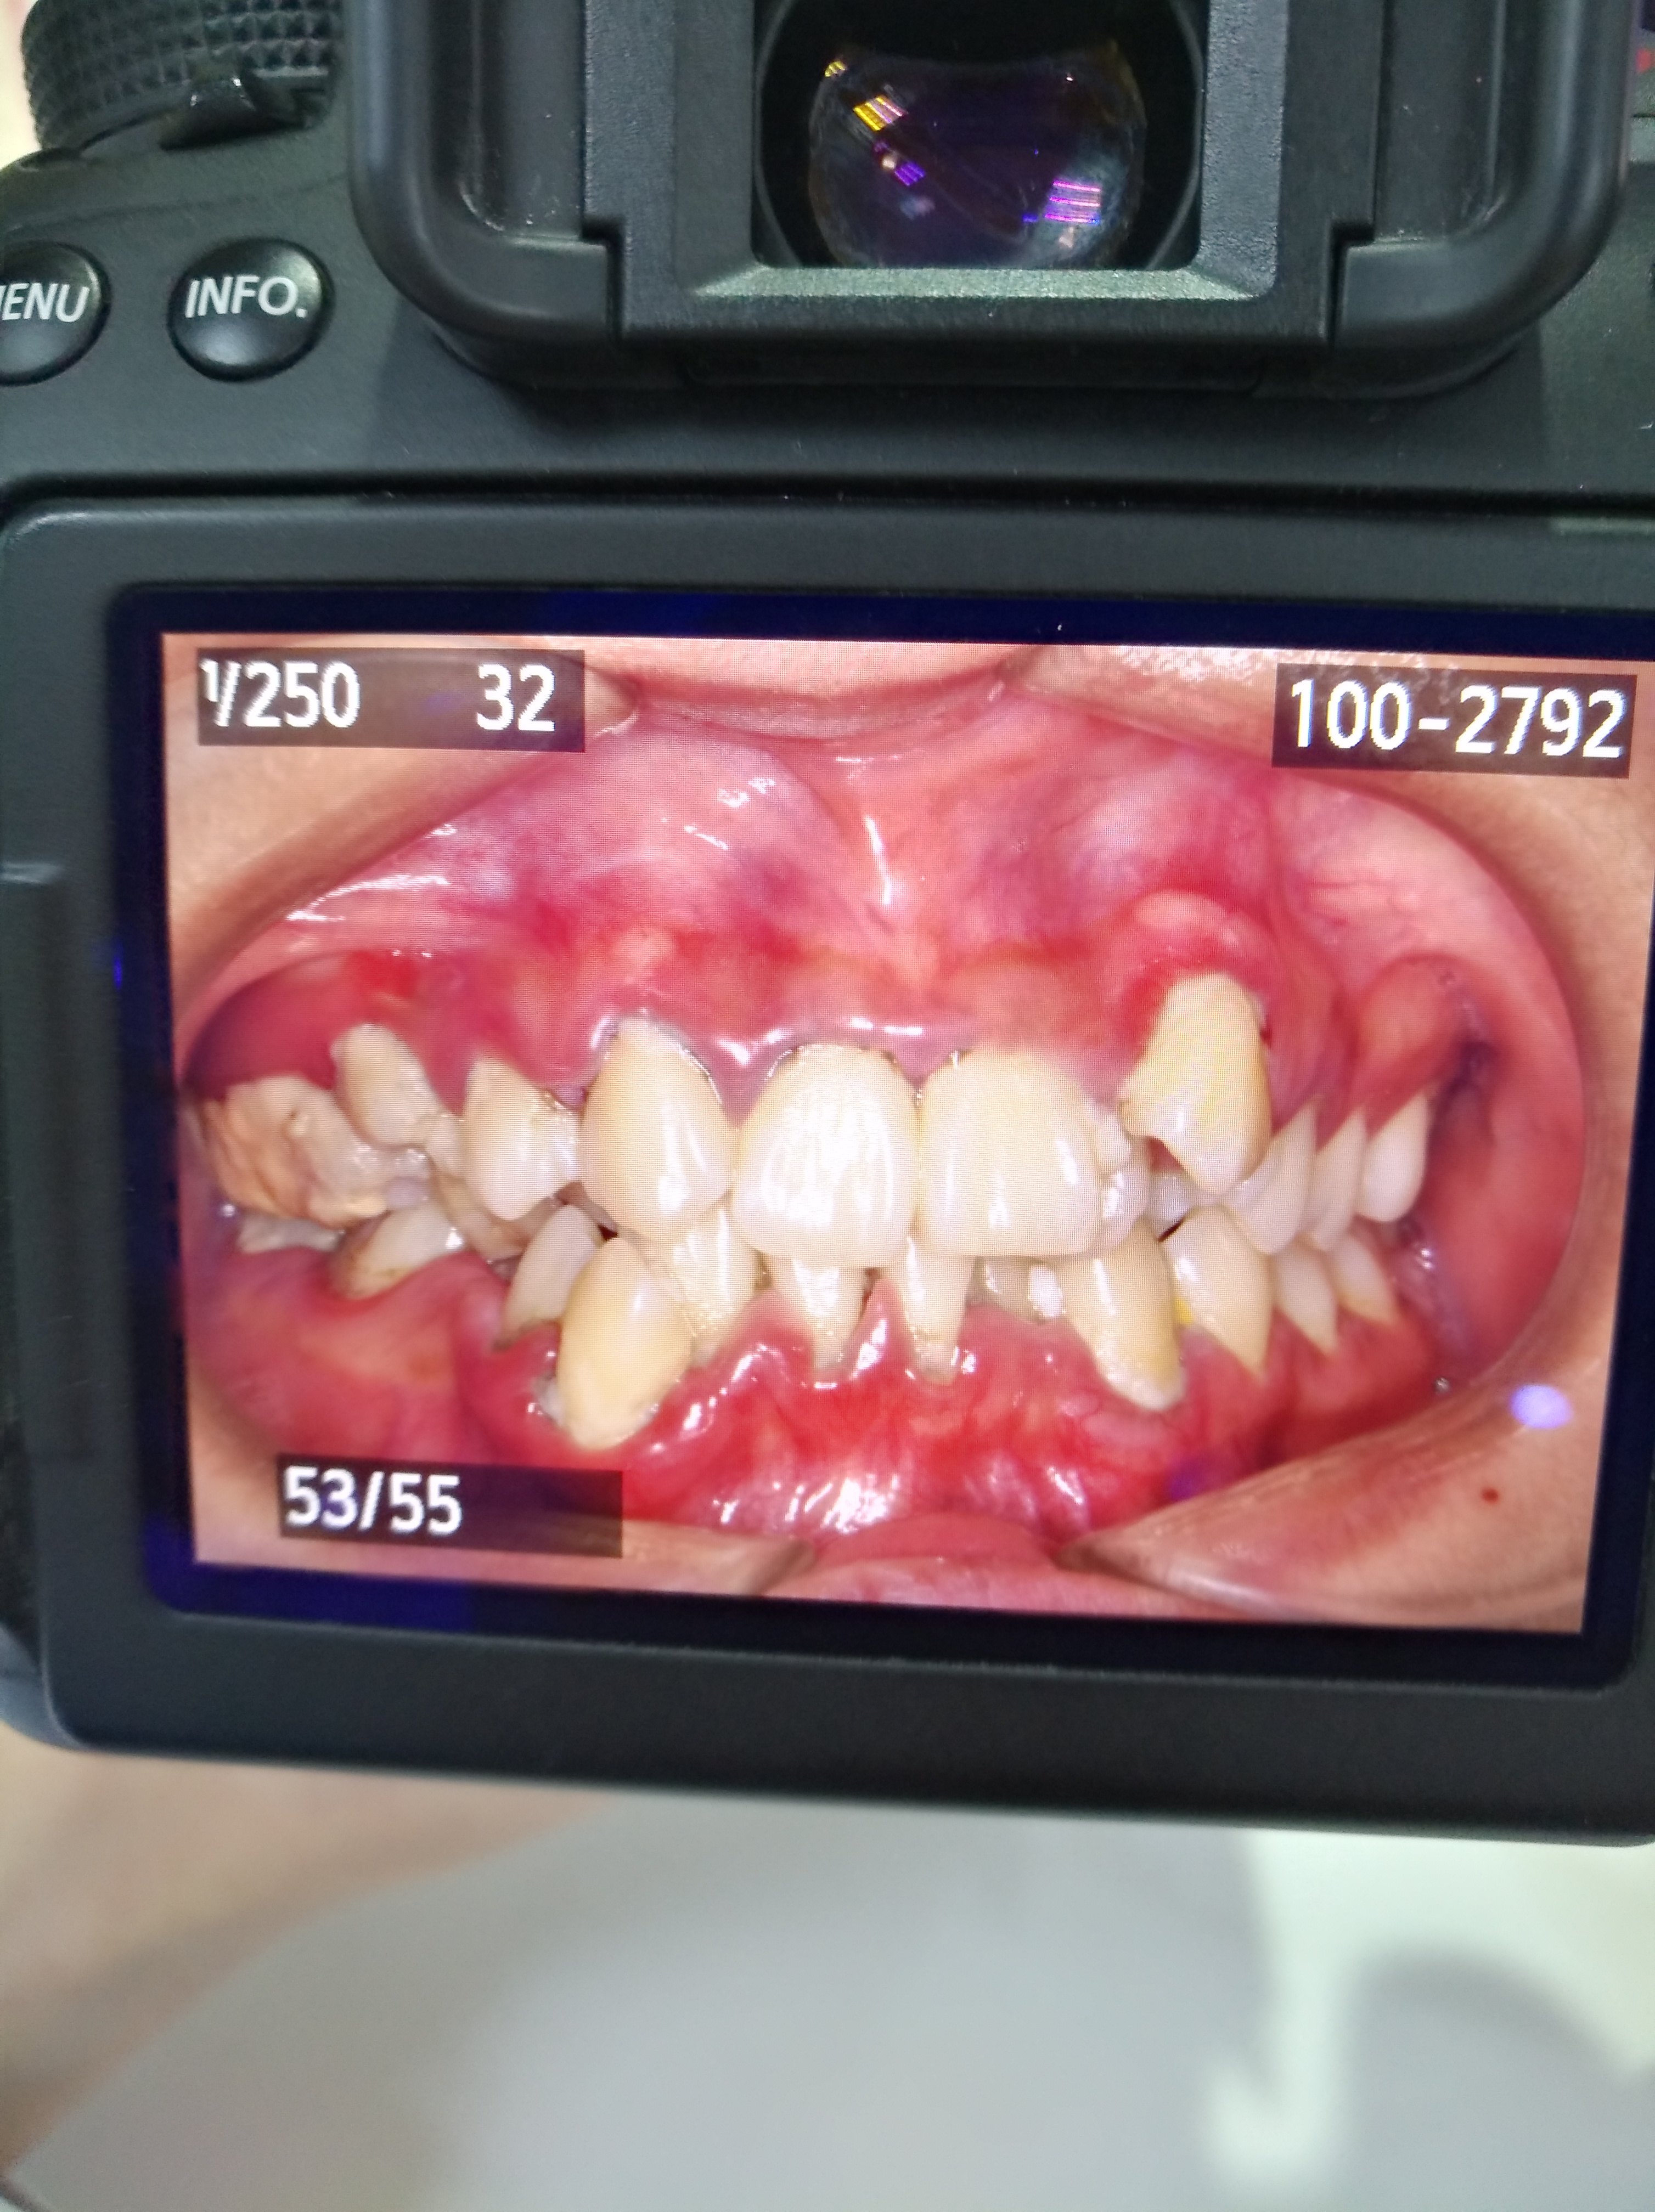 患者第一次就诊时口腔内情况:牙龈明显红肿,可见龈上牙结石,牙列拥挤